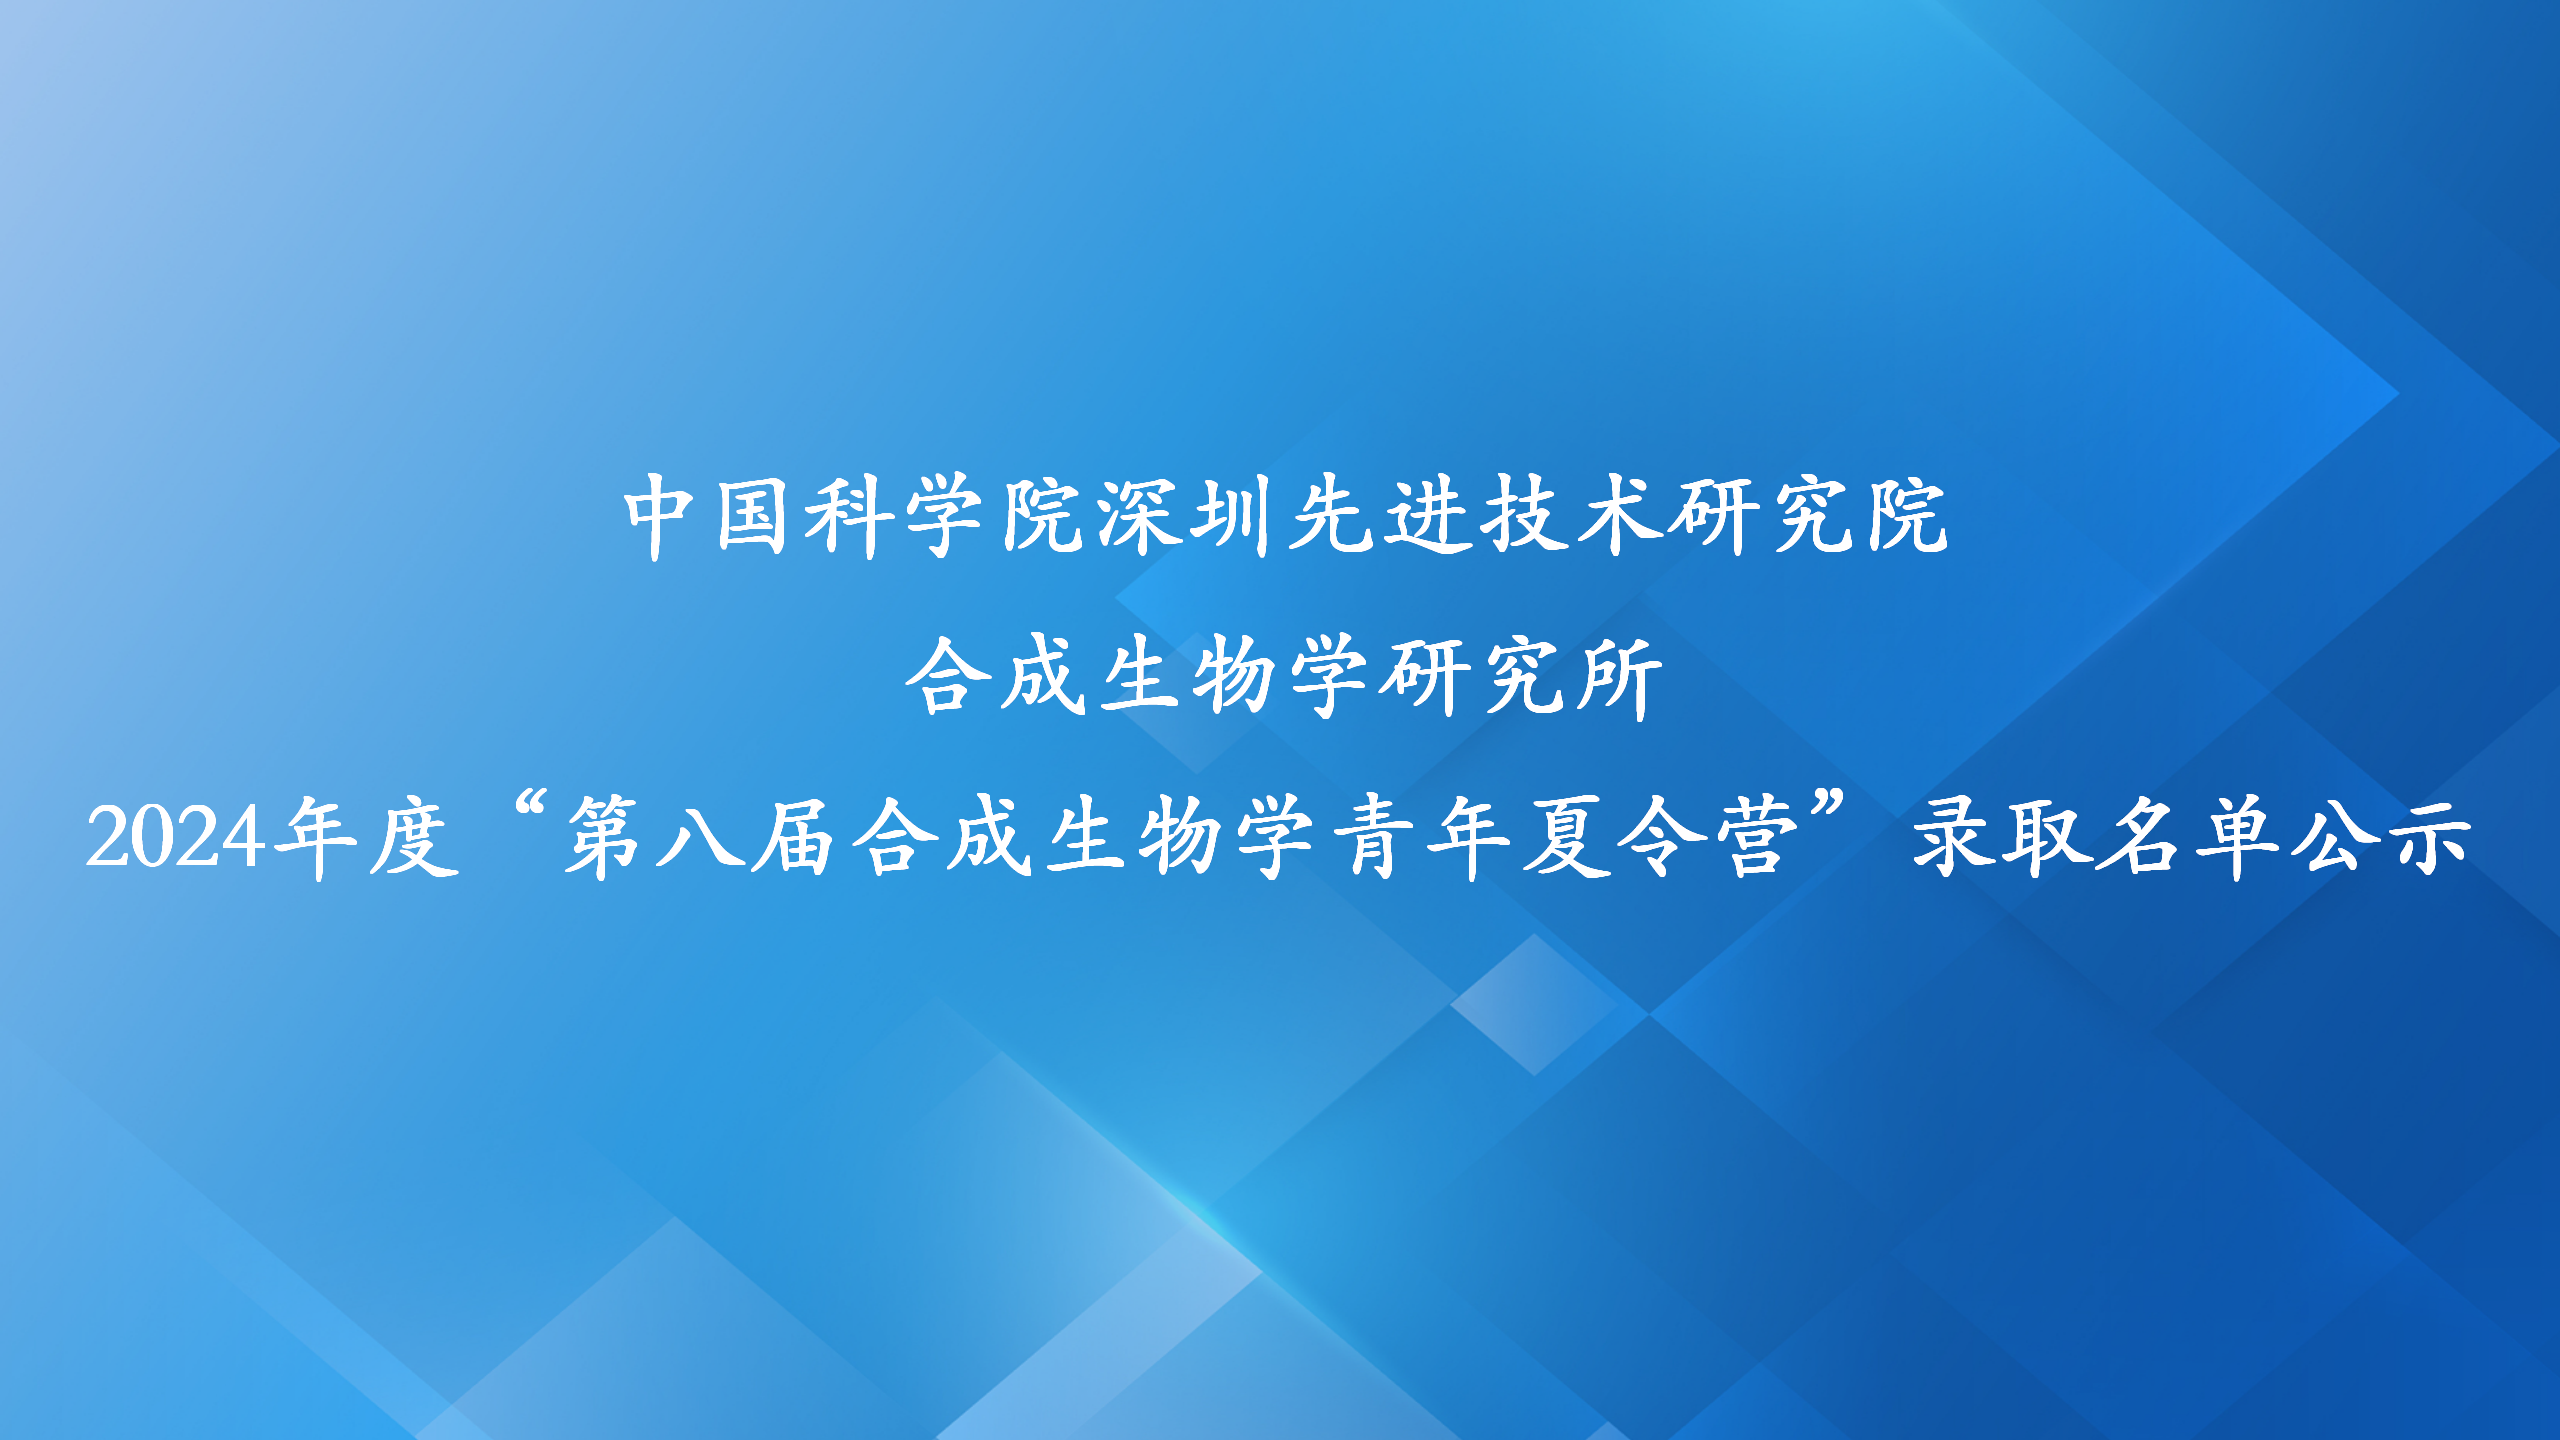 中国科学院深圳先进技术研究院 合成生物学研究所 2024年度“第八届合成生物学青年夏令营”录取名单公示